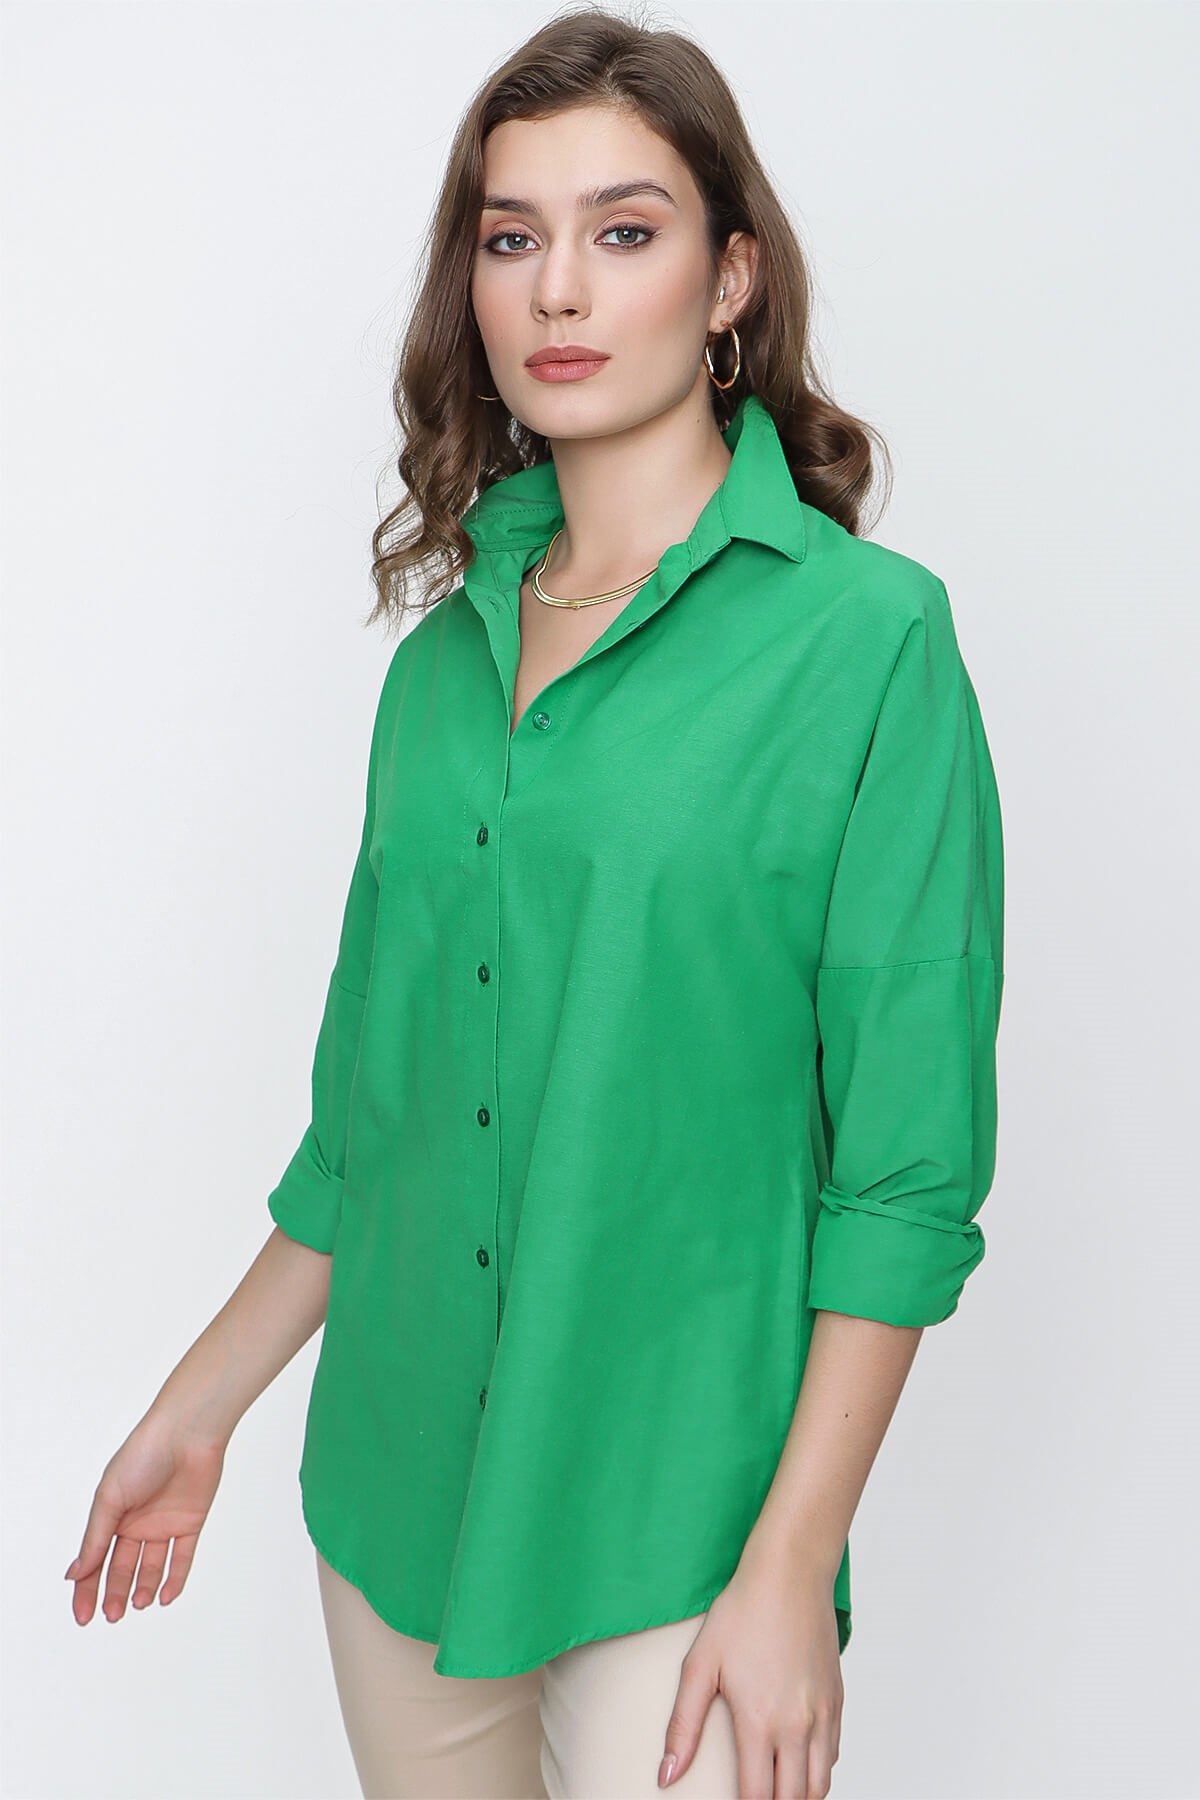 Kadın Yeşil Geniş Yaka Düz Gömlek III Butik Buruç'ta